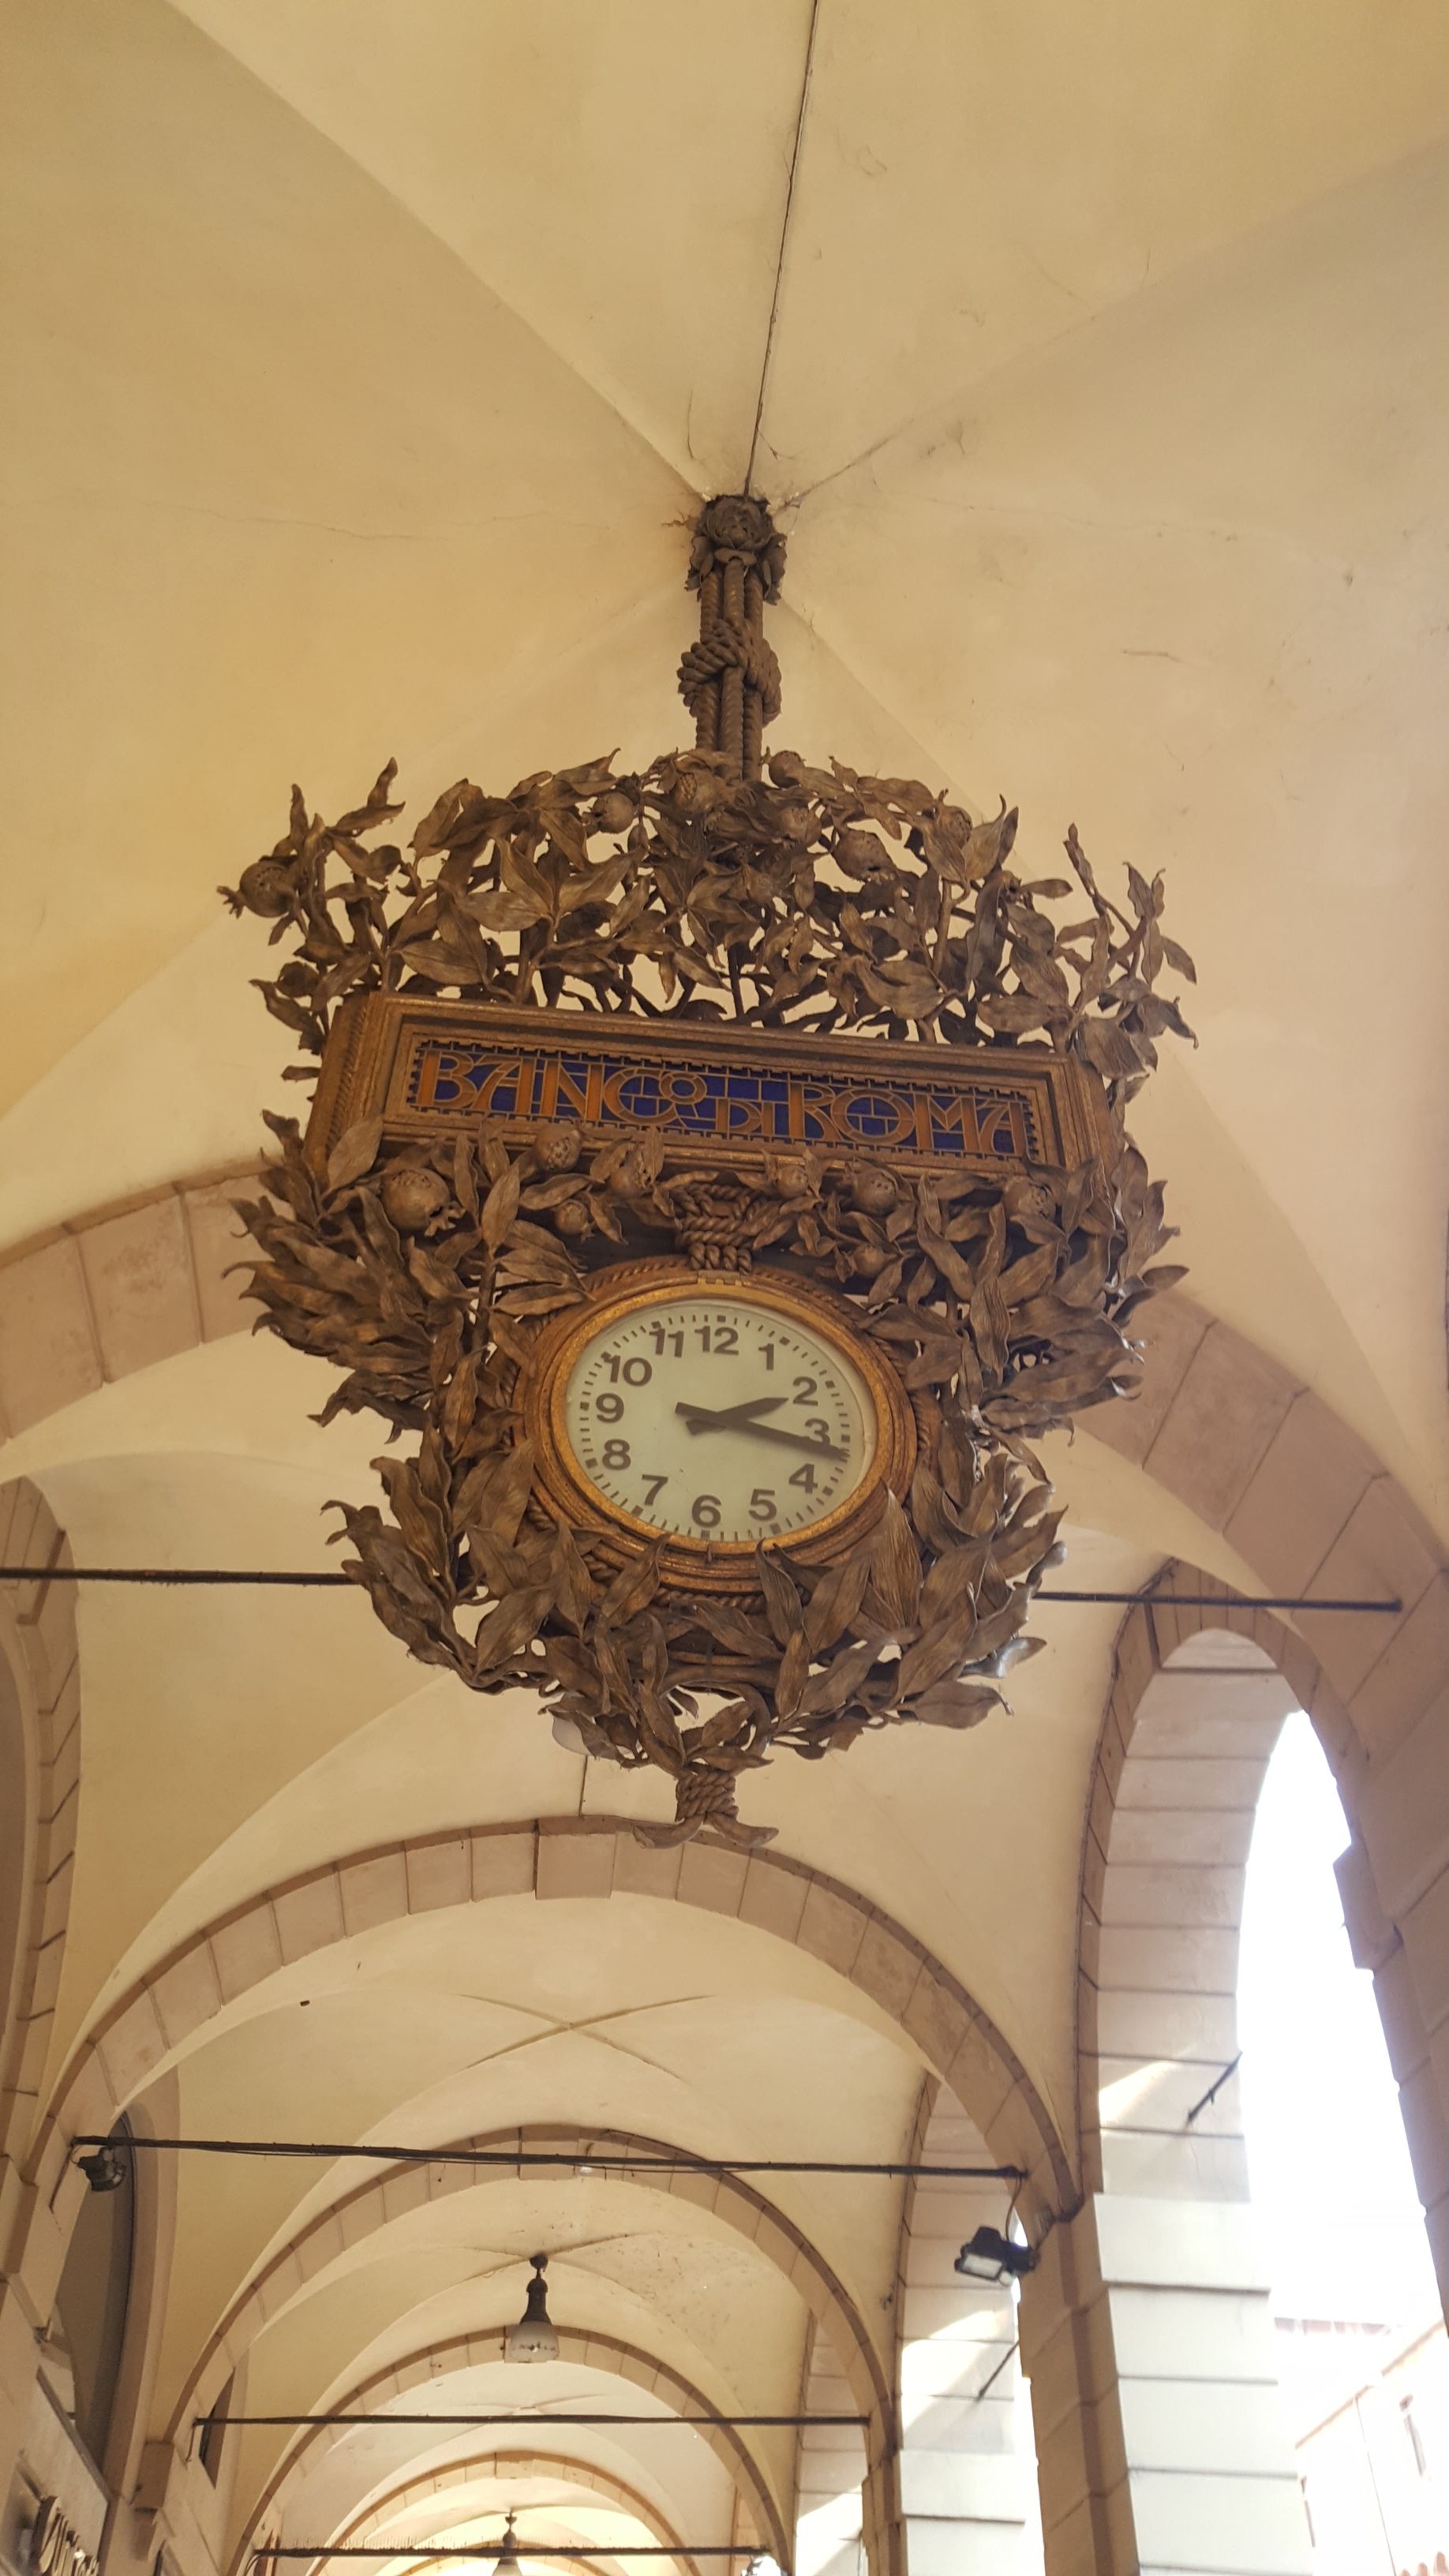 File:Bologna — old clock (Banca di Roma).jpg - Wikimedia Commons